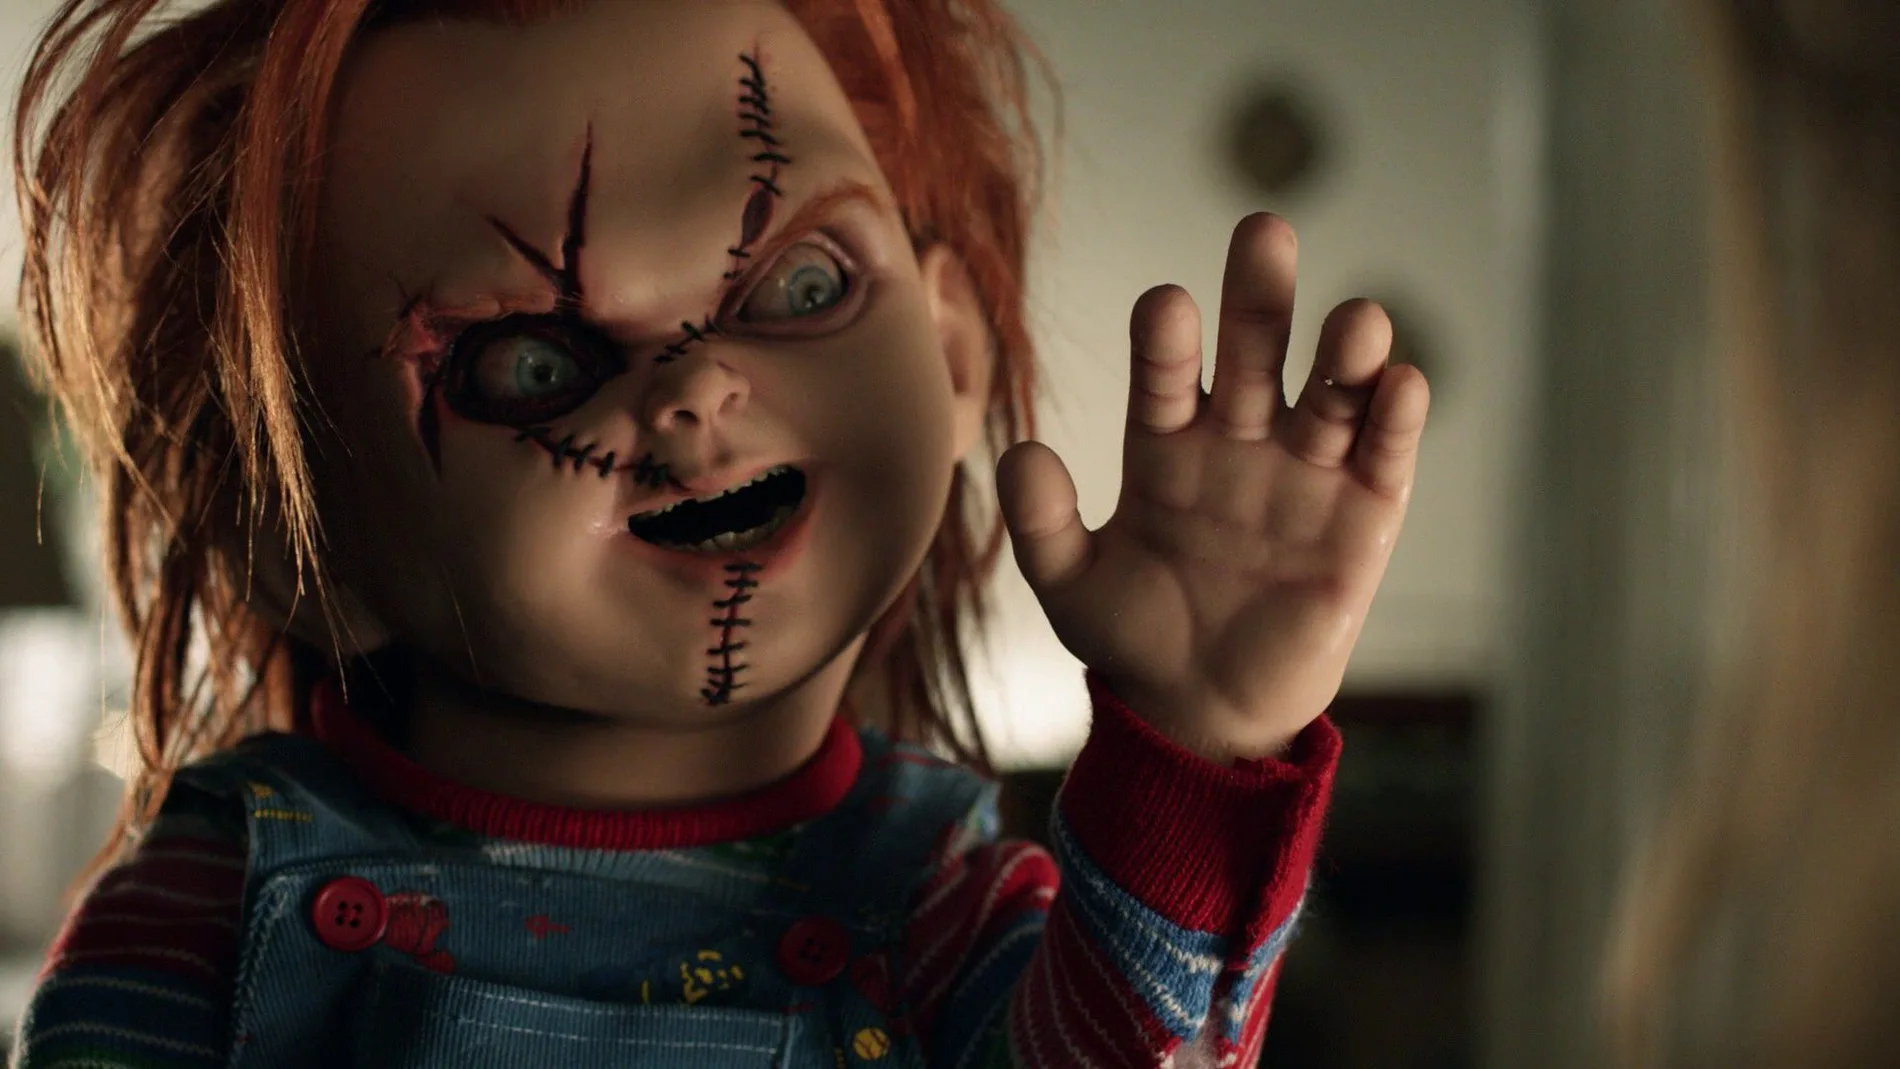 El referente inmediato de Chucky es Reagan MacNeil, la niña de «El exorcista»